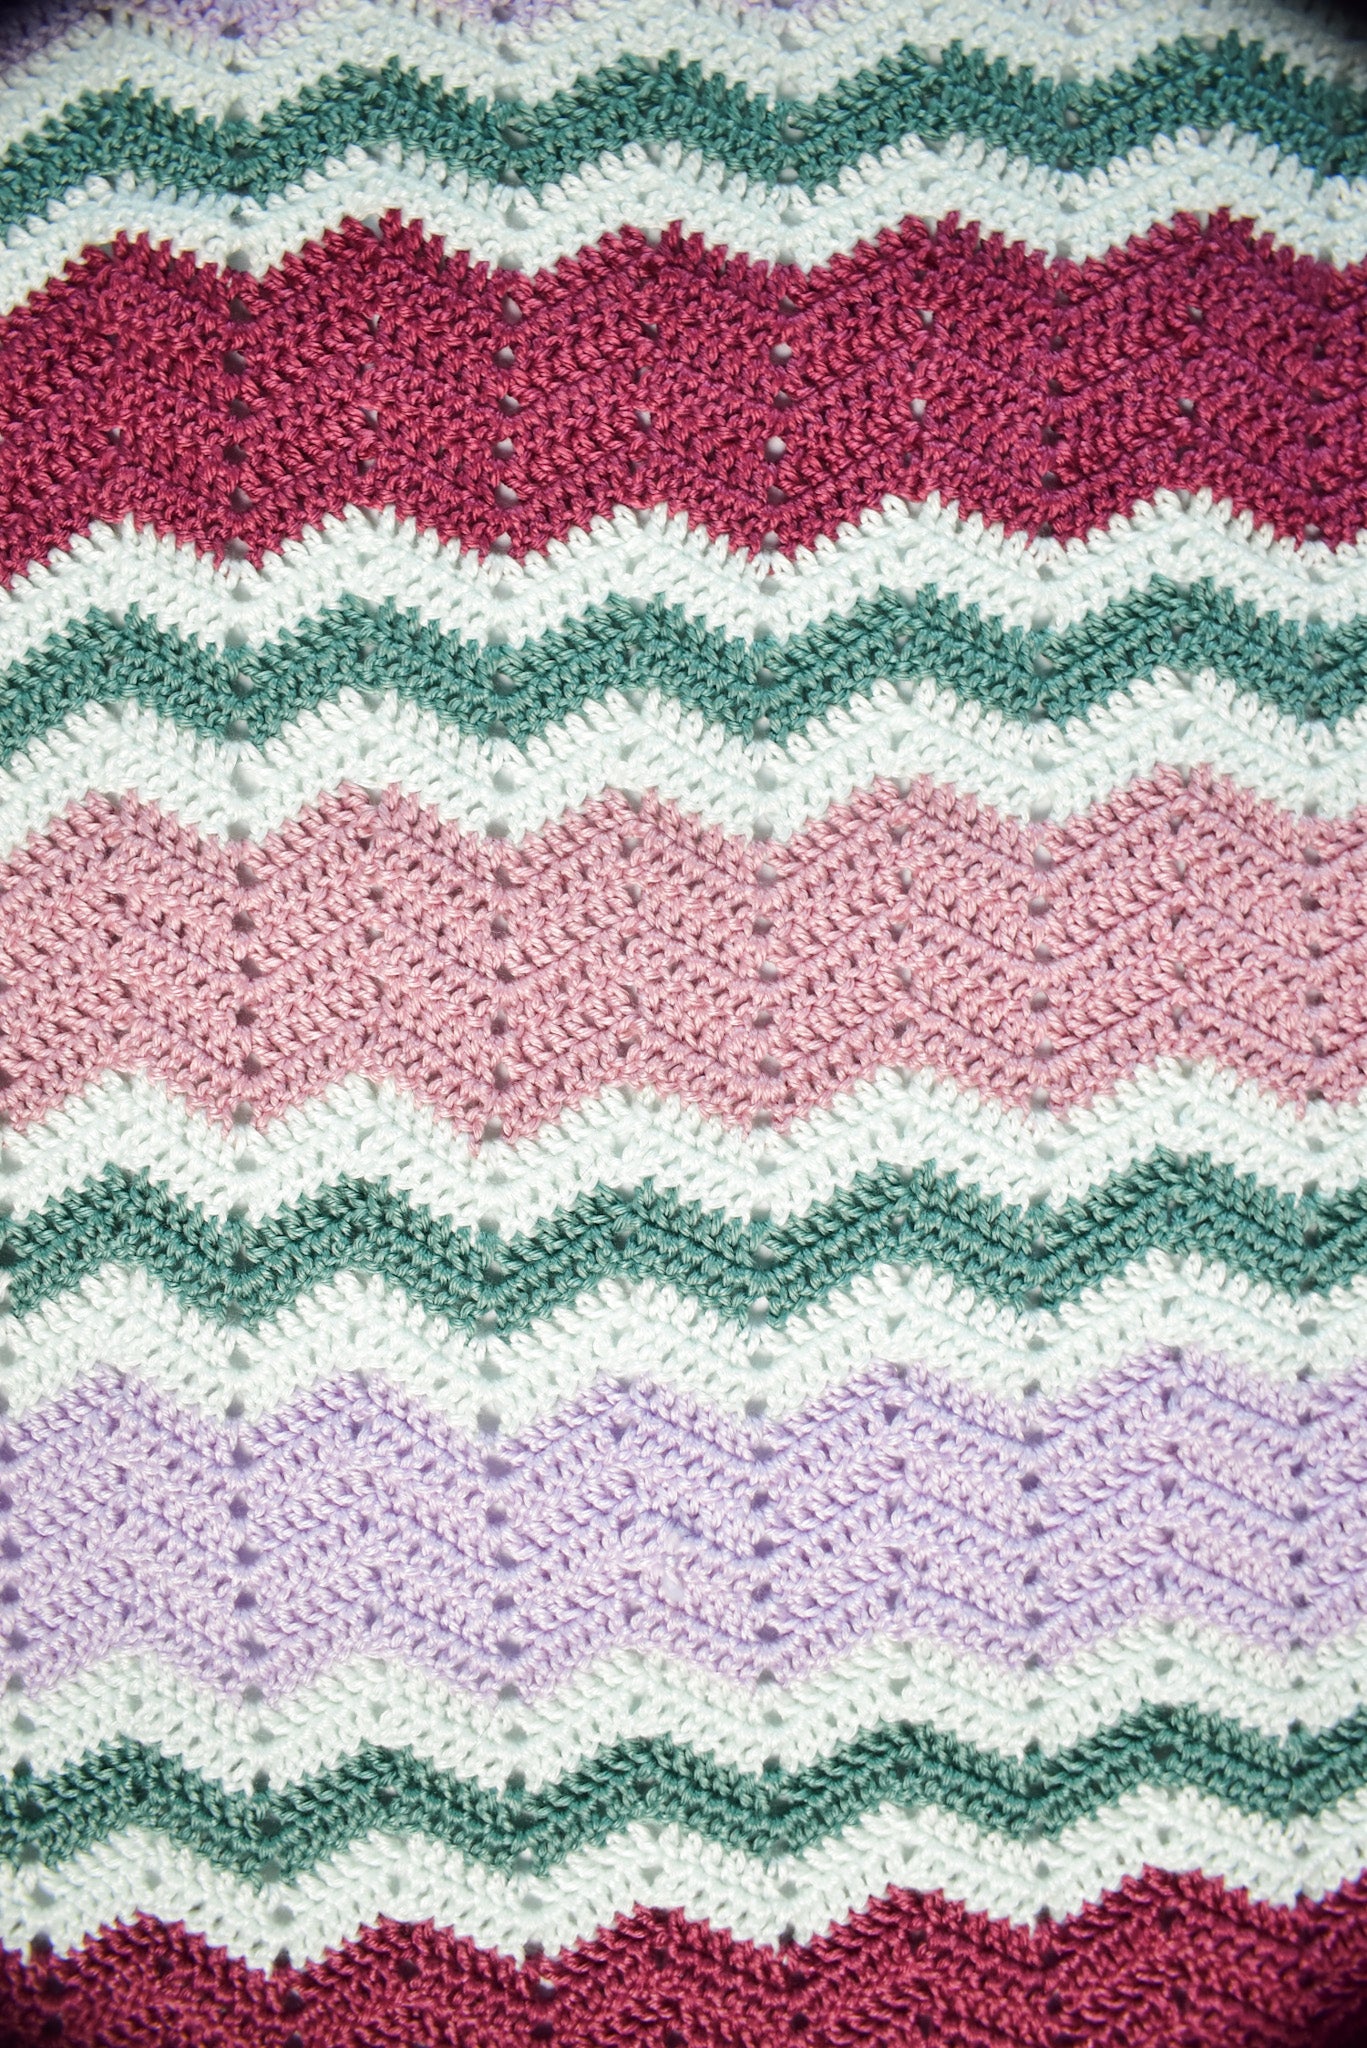 Emma Baby Blanket Crochet Pattern